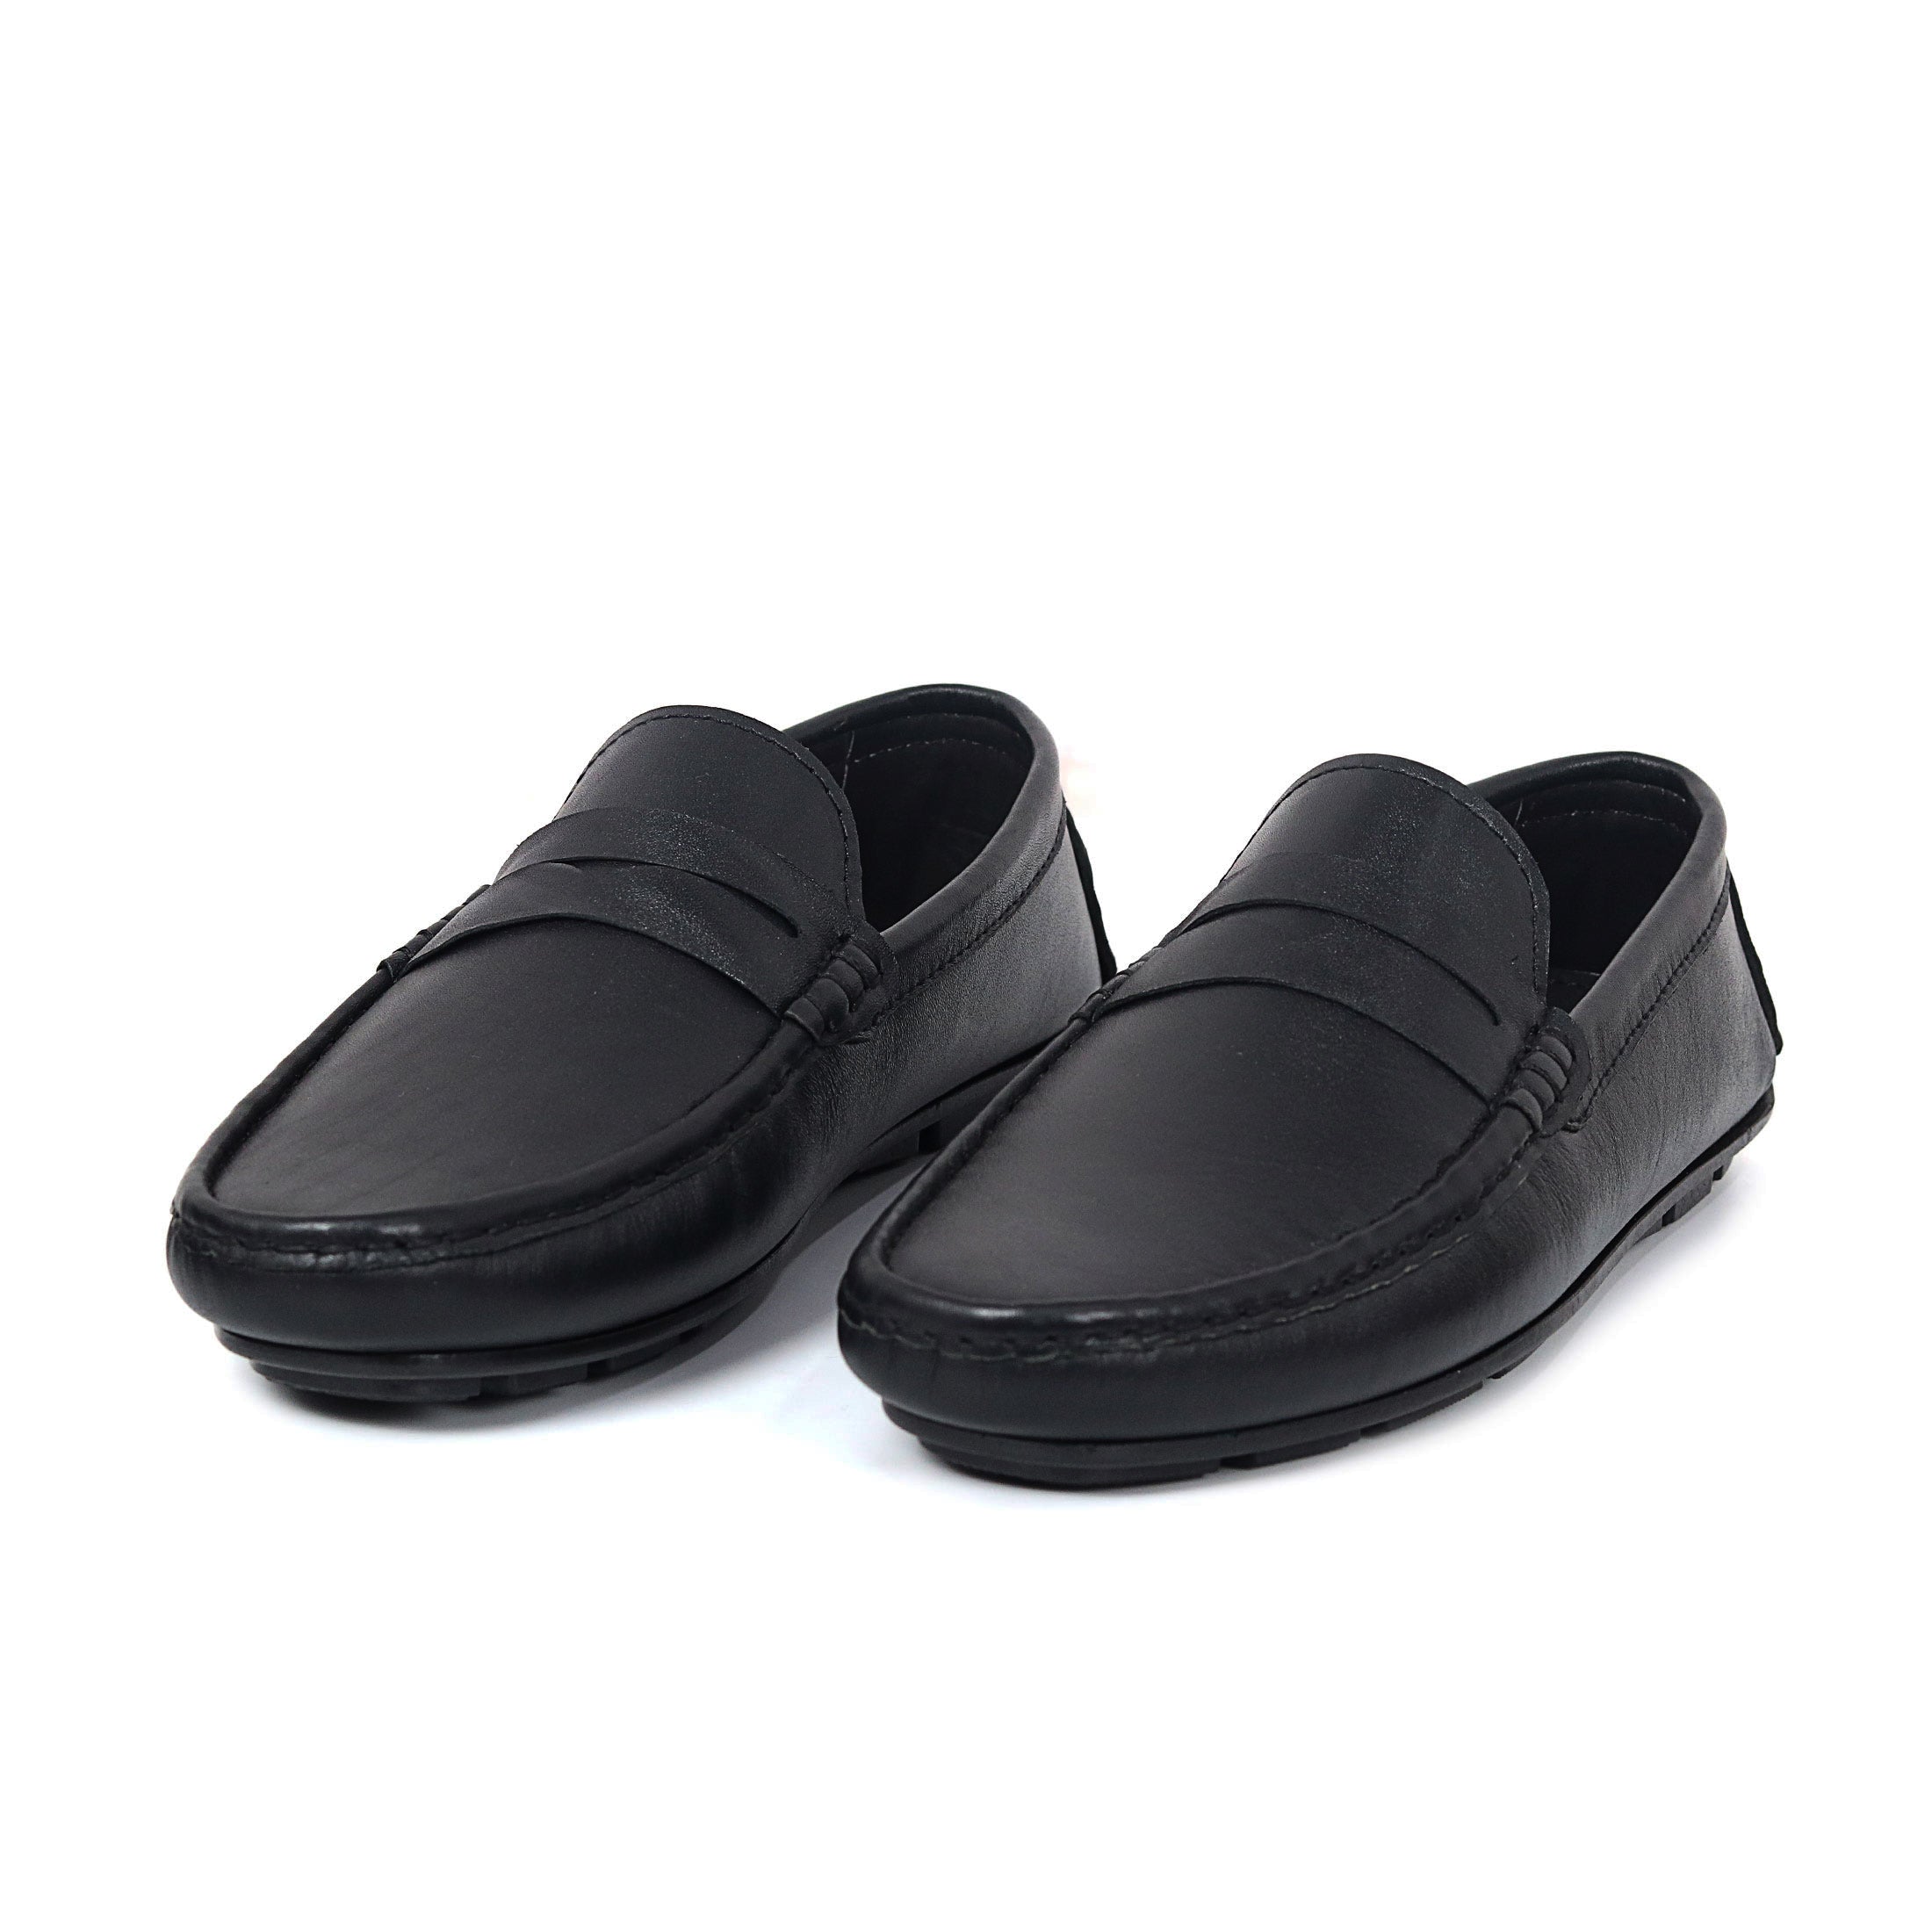 Zays Leather Loafer Shoe For Men (Black) - SF75